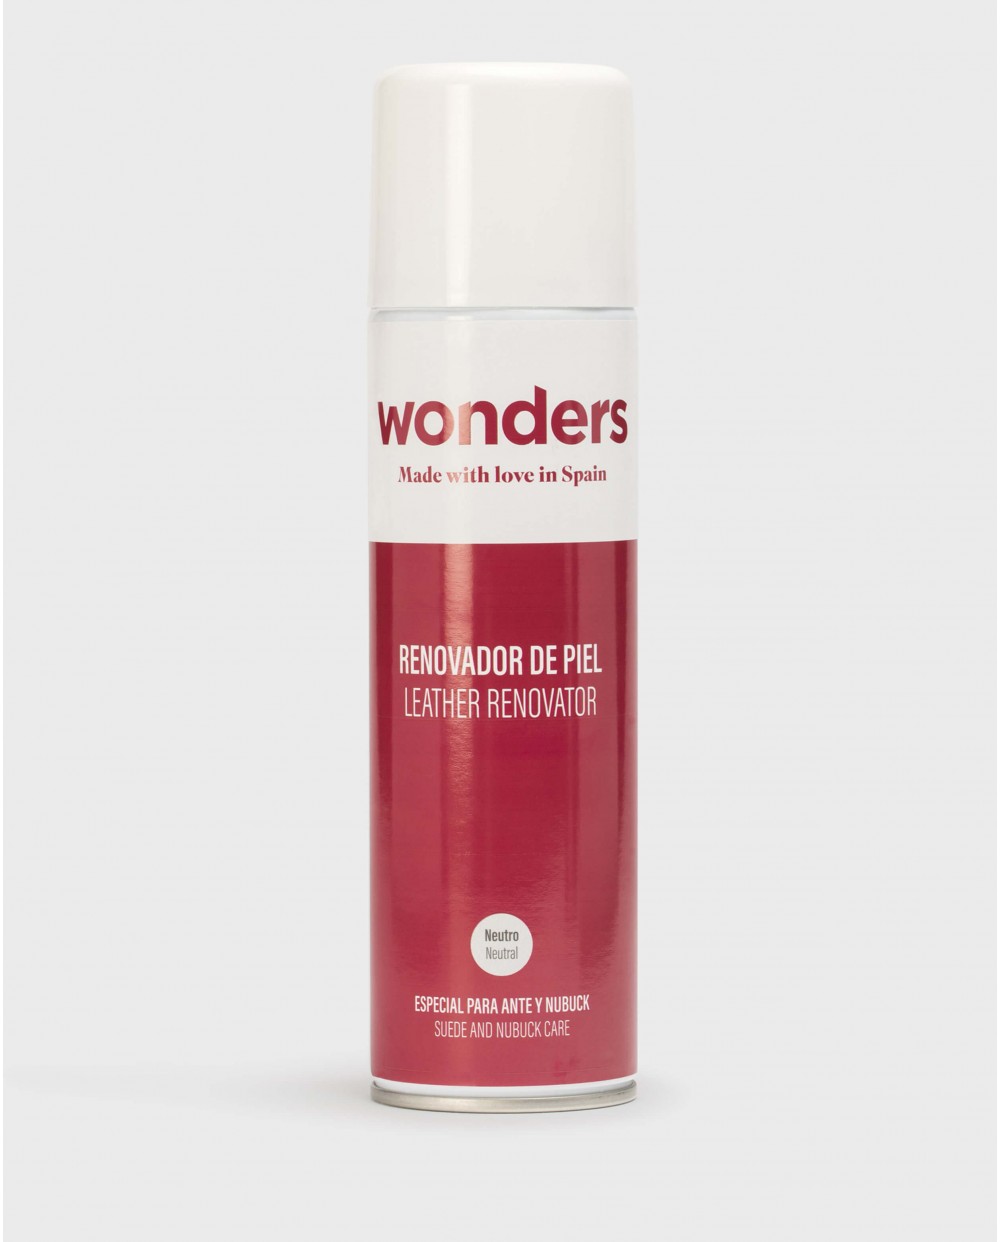 Wonders-Complementos-Renovador de piel